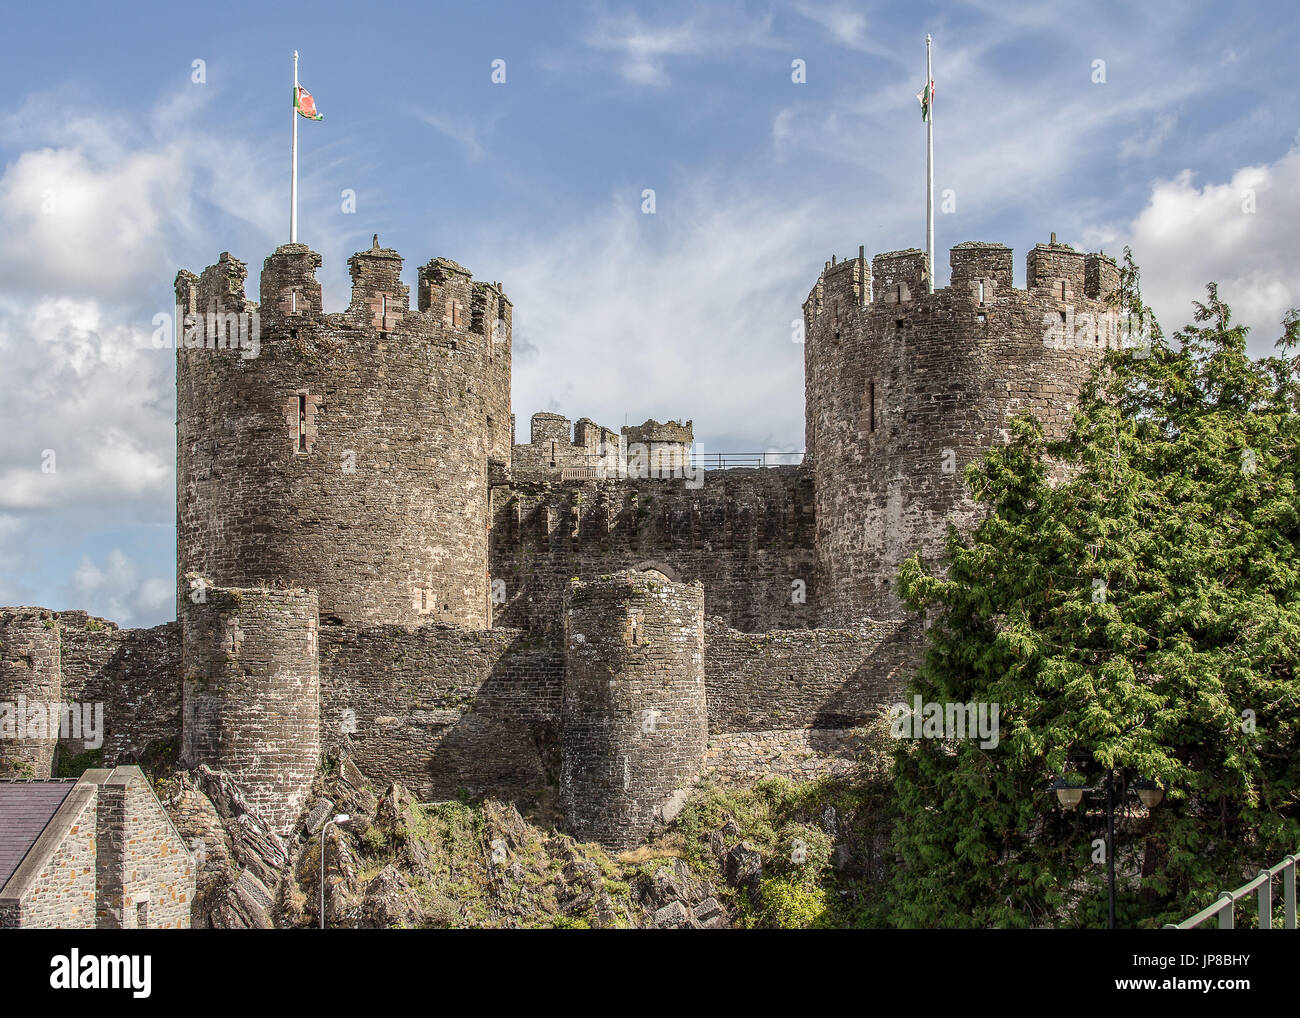 Deux tours de Château de Conwy, au nord du Pays de Galles, complet avec le Welsh Les drapeaux sur les deux tours. Image prise par une belle journée ensoleillée Banque D'Images